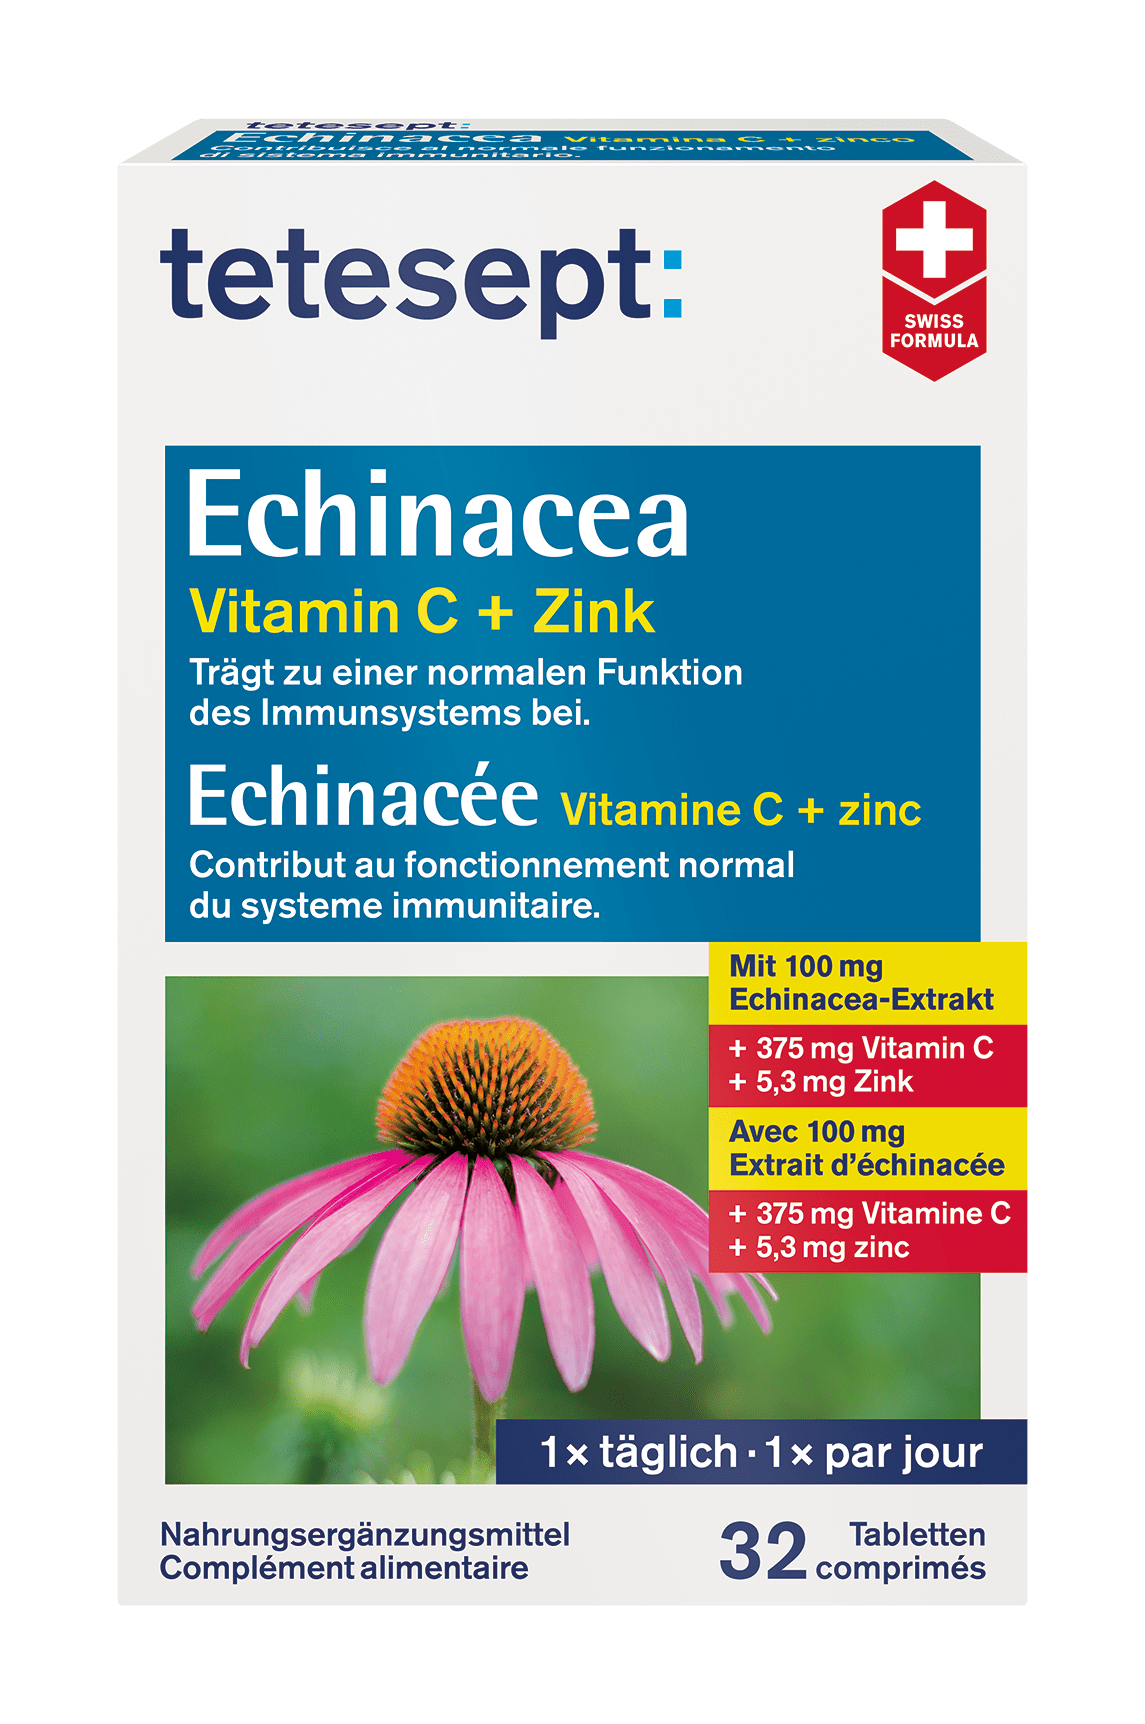 tetesept Echinacea Vitamin C + Zink